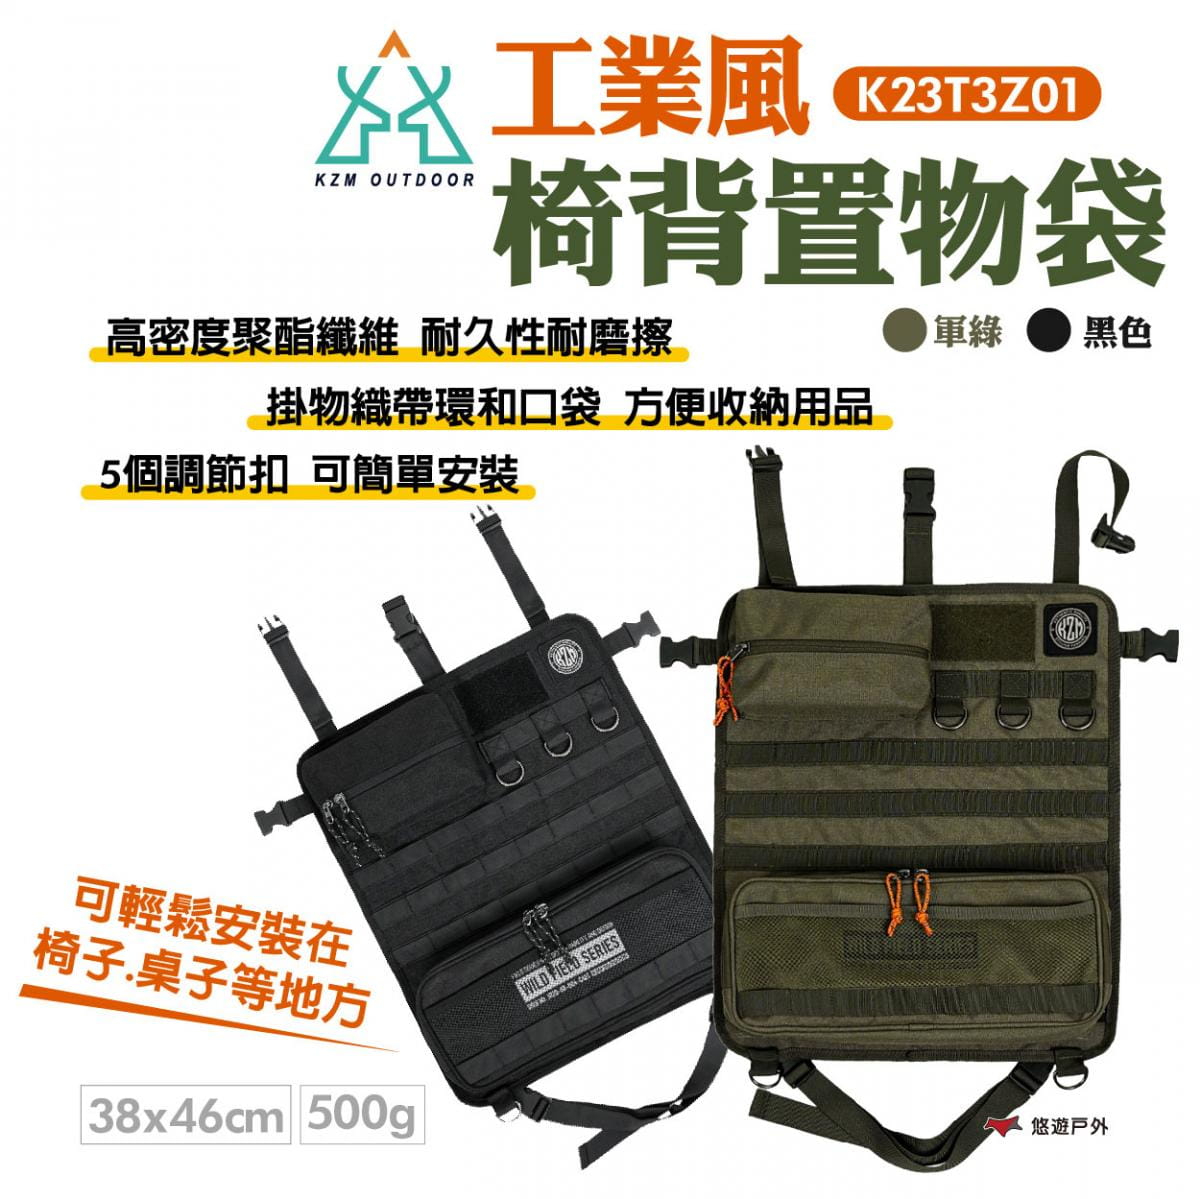 【KZM】工業風椅背置物袋 K23T3Z01 悠遊戶外 1